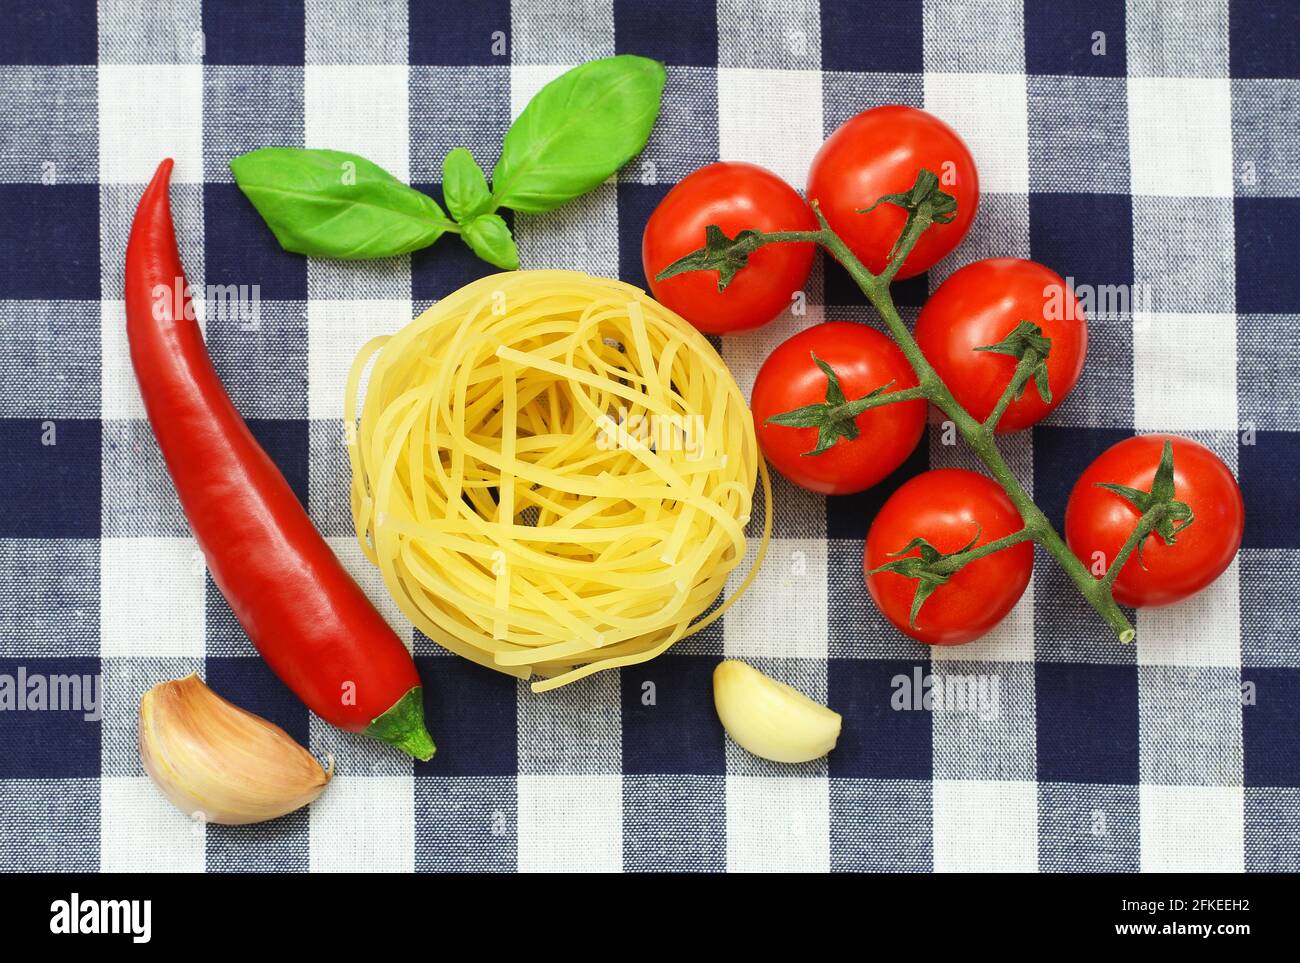 Selezione di ingredienti di pasta: Tagliatelle, pomodori ciliegini, aglio, peperoncino e foglie di basilico fresco Foto Stock